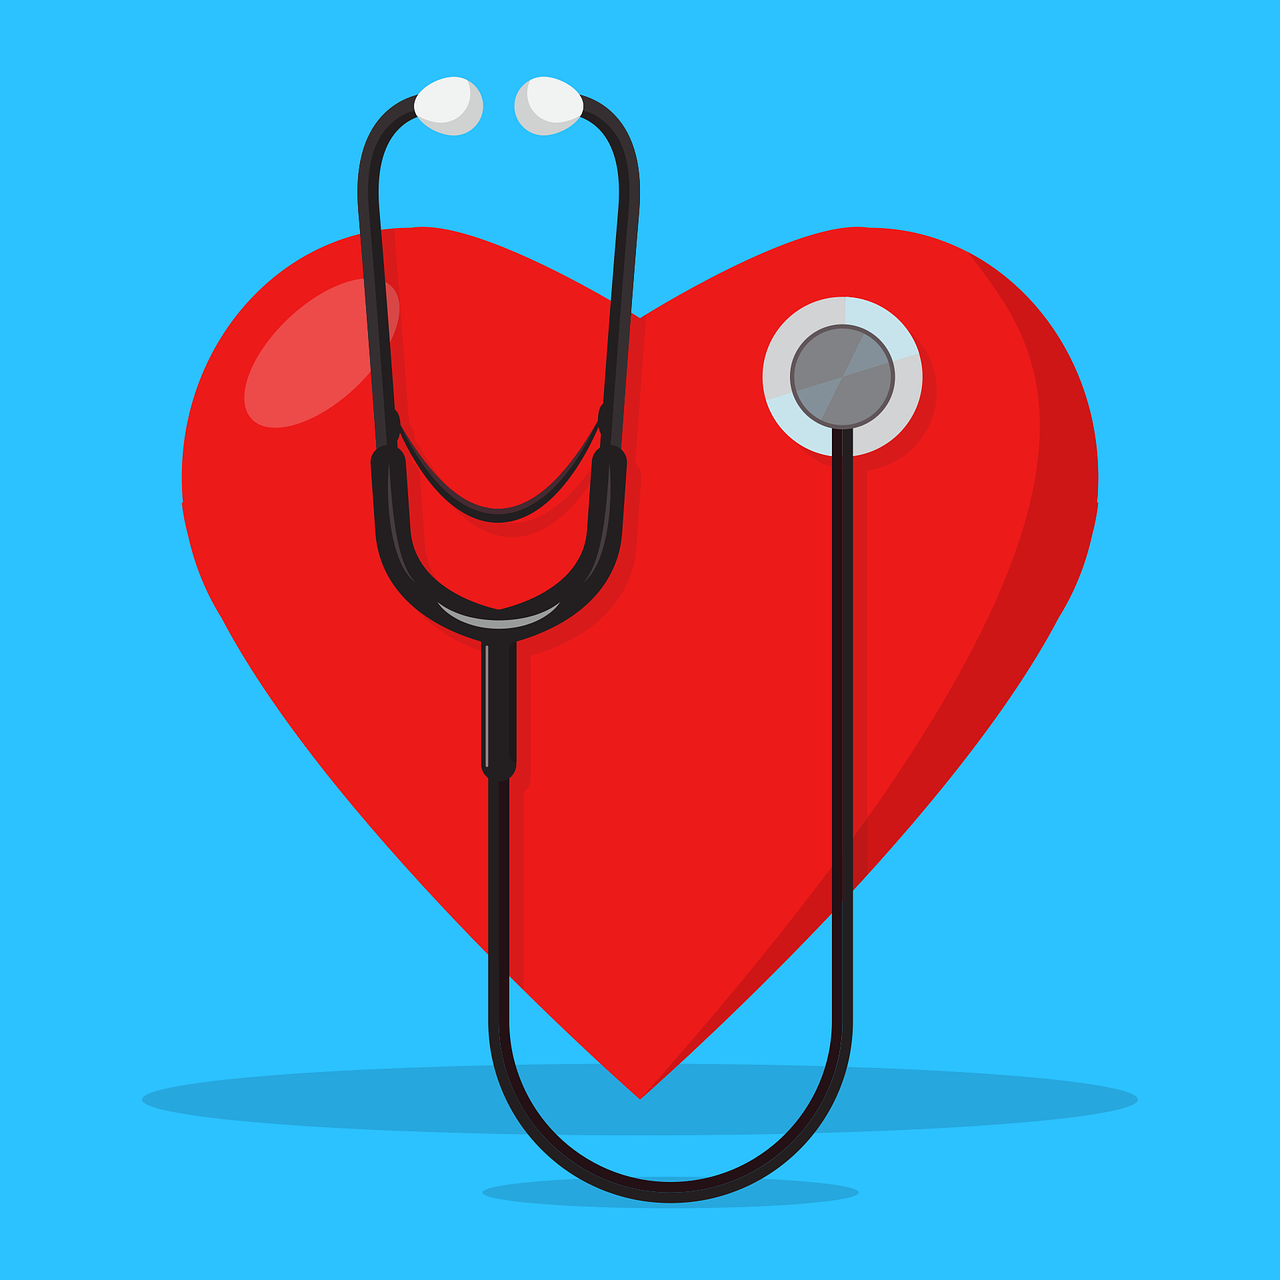 2021ESC心脏起搏和心脏再同步治疗威廉亚洲博彩公司更新内容解读